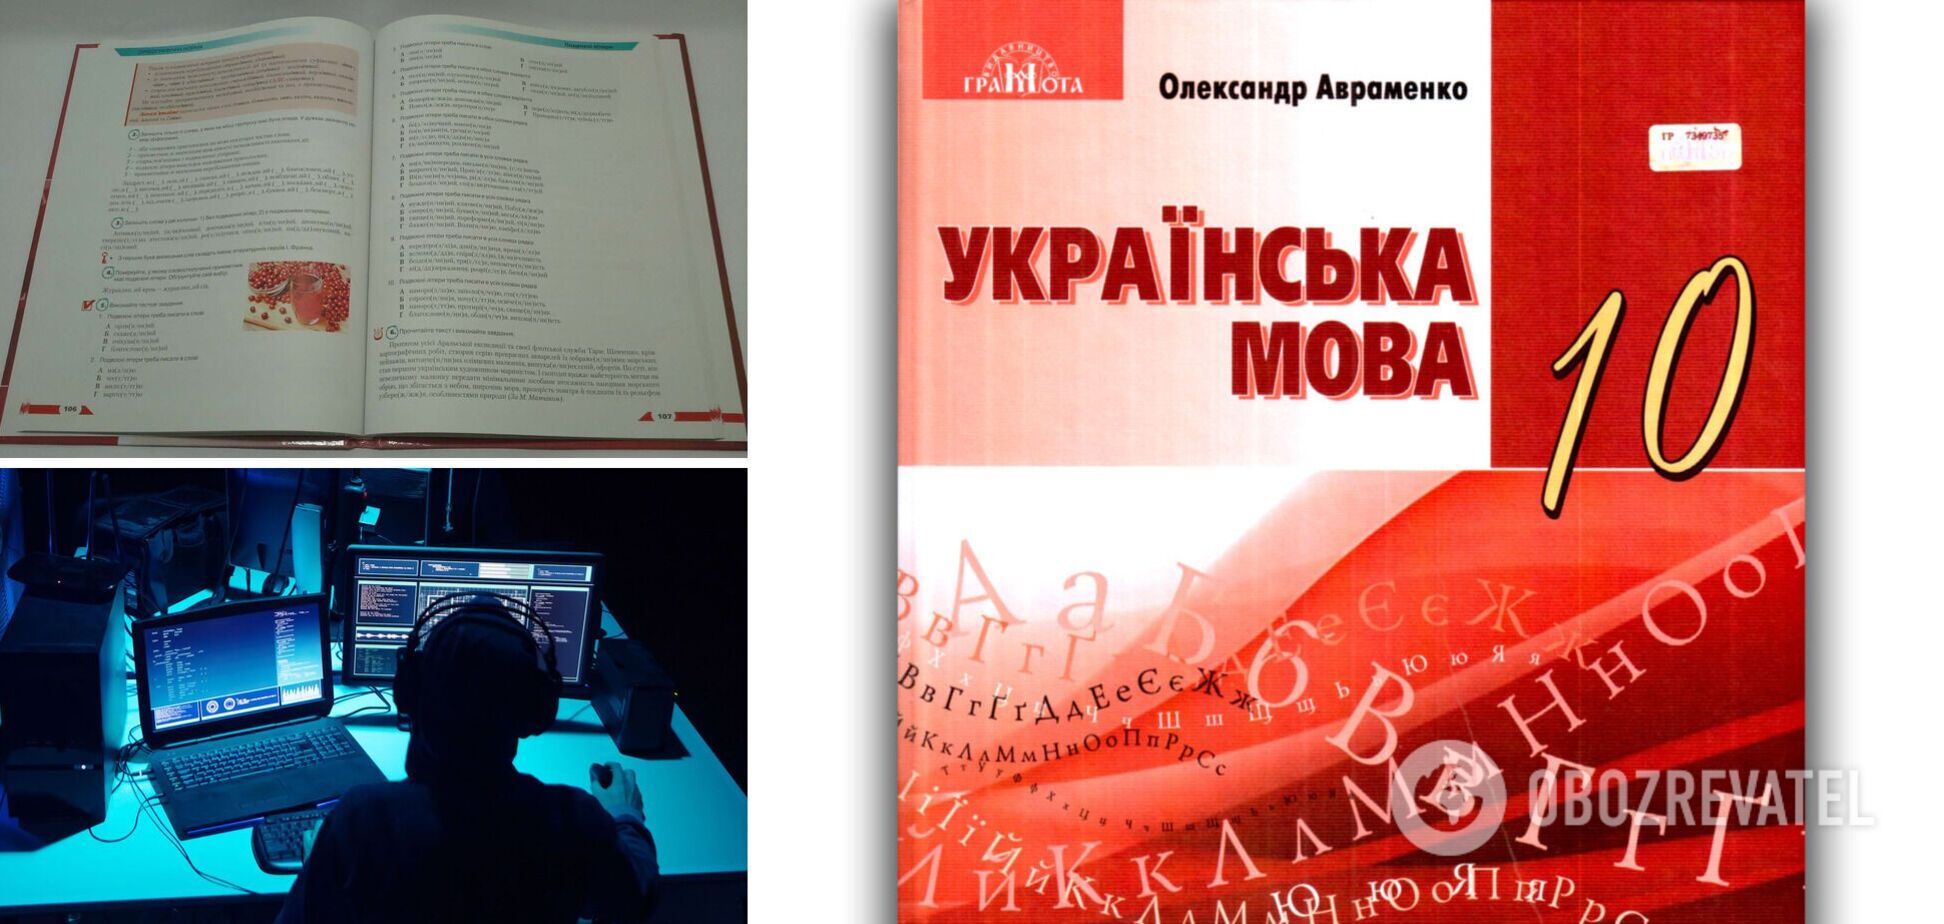 У Раді пояснили, як посилання на порносайт з'явилося в підручнику з української мови